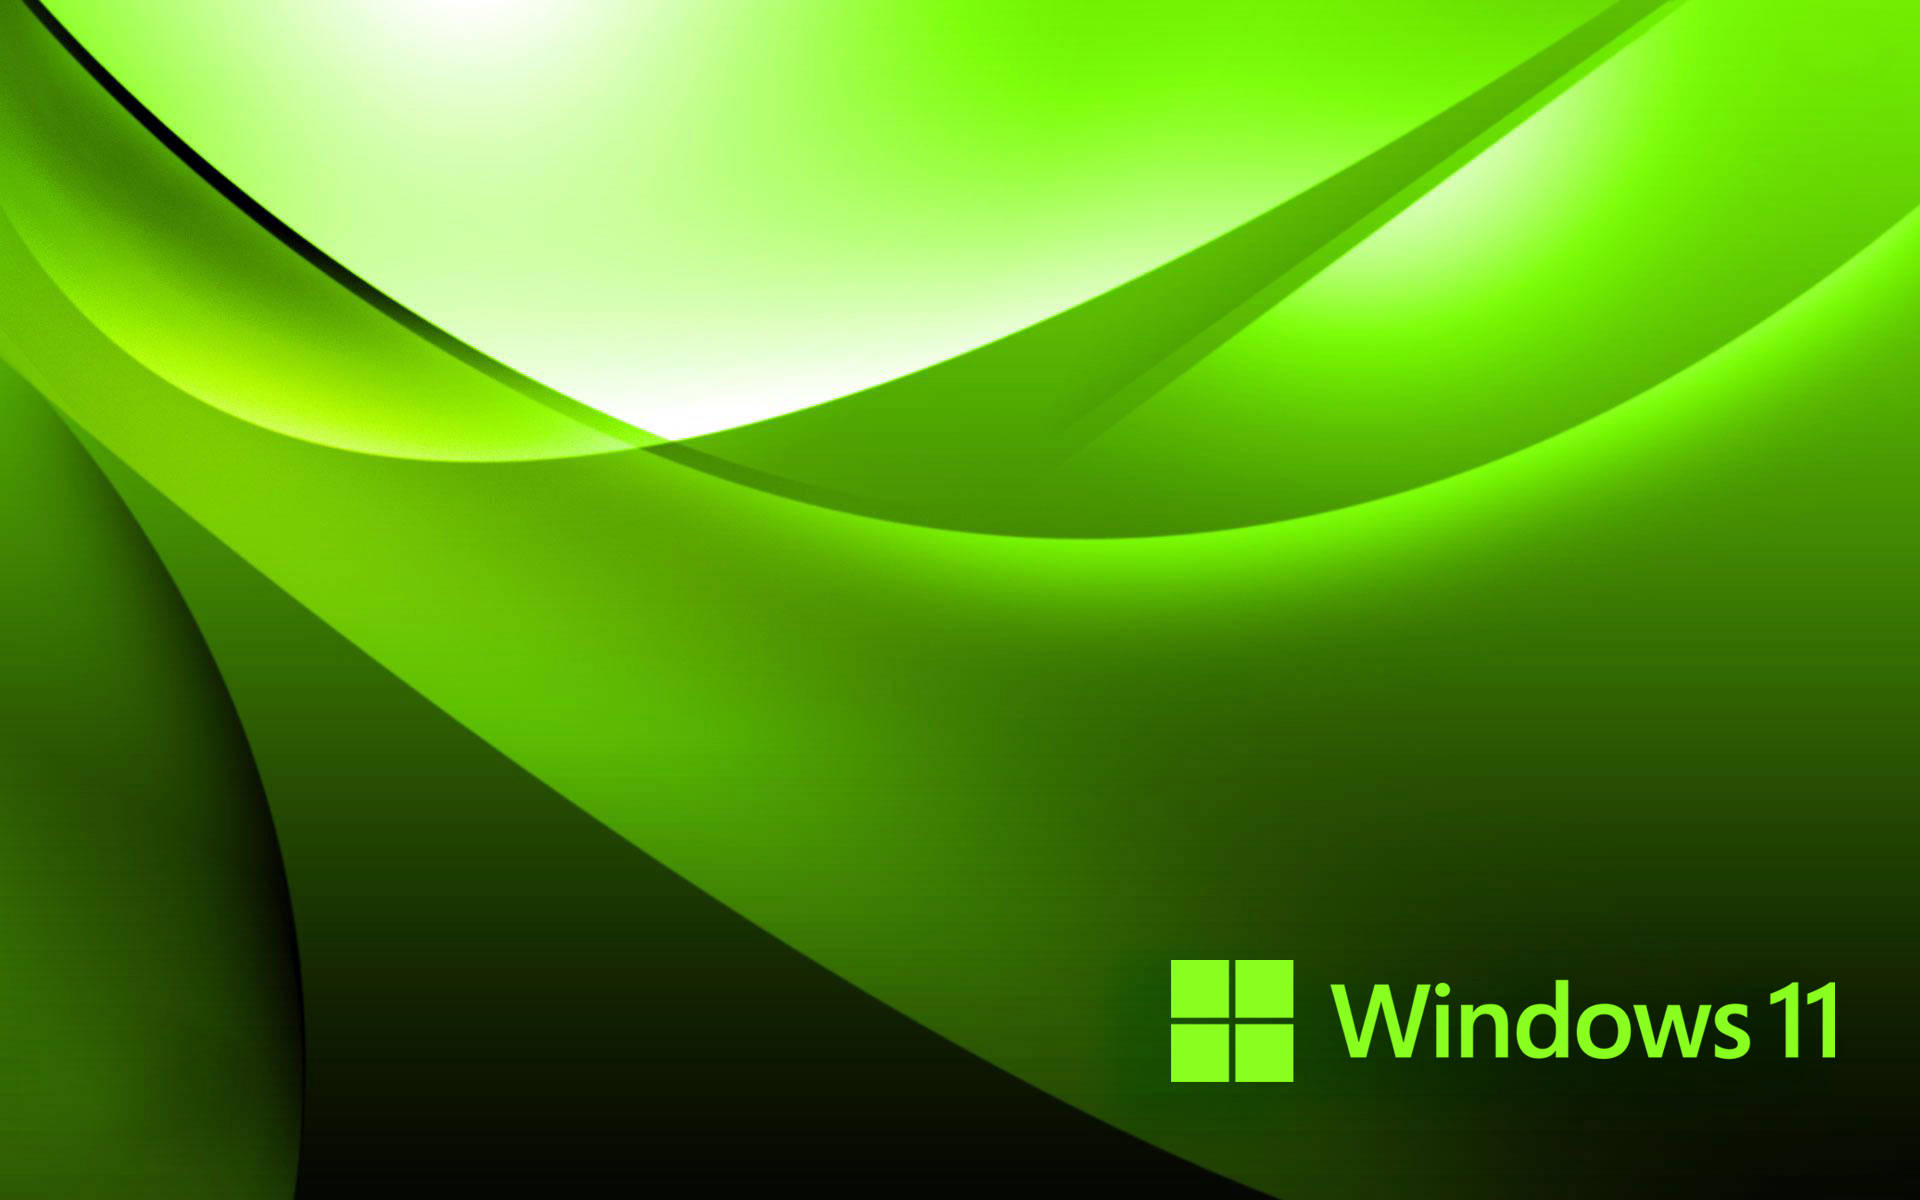 Windows 11 Green Background